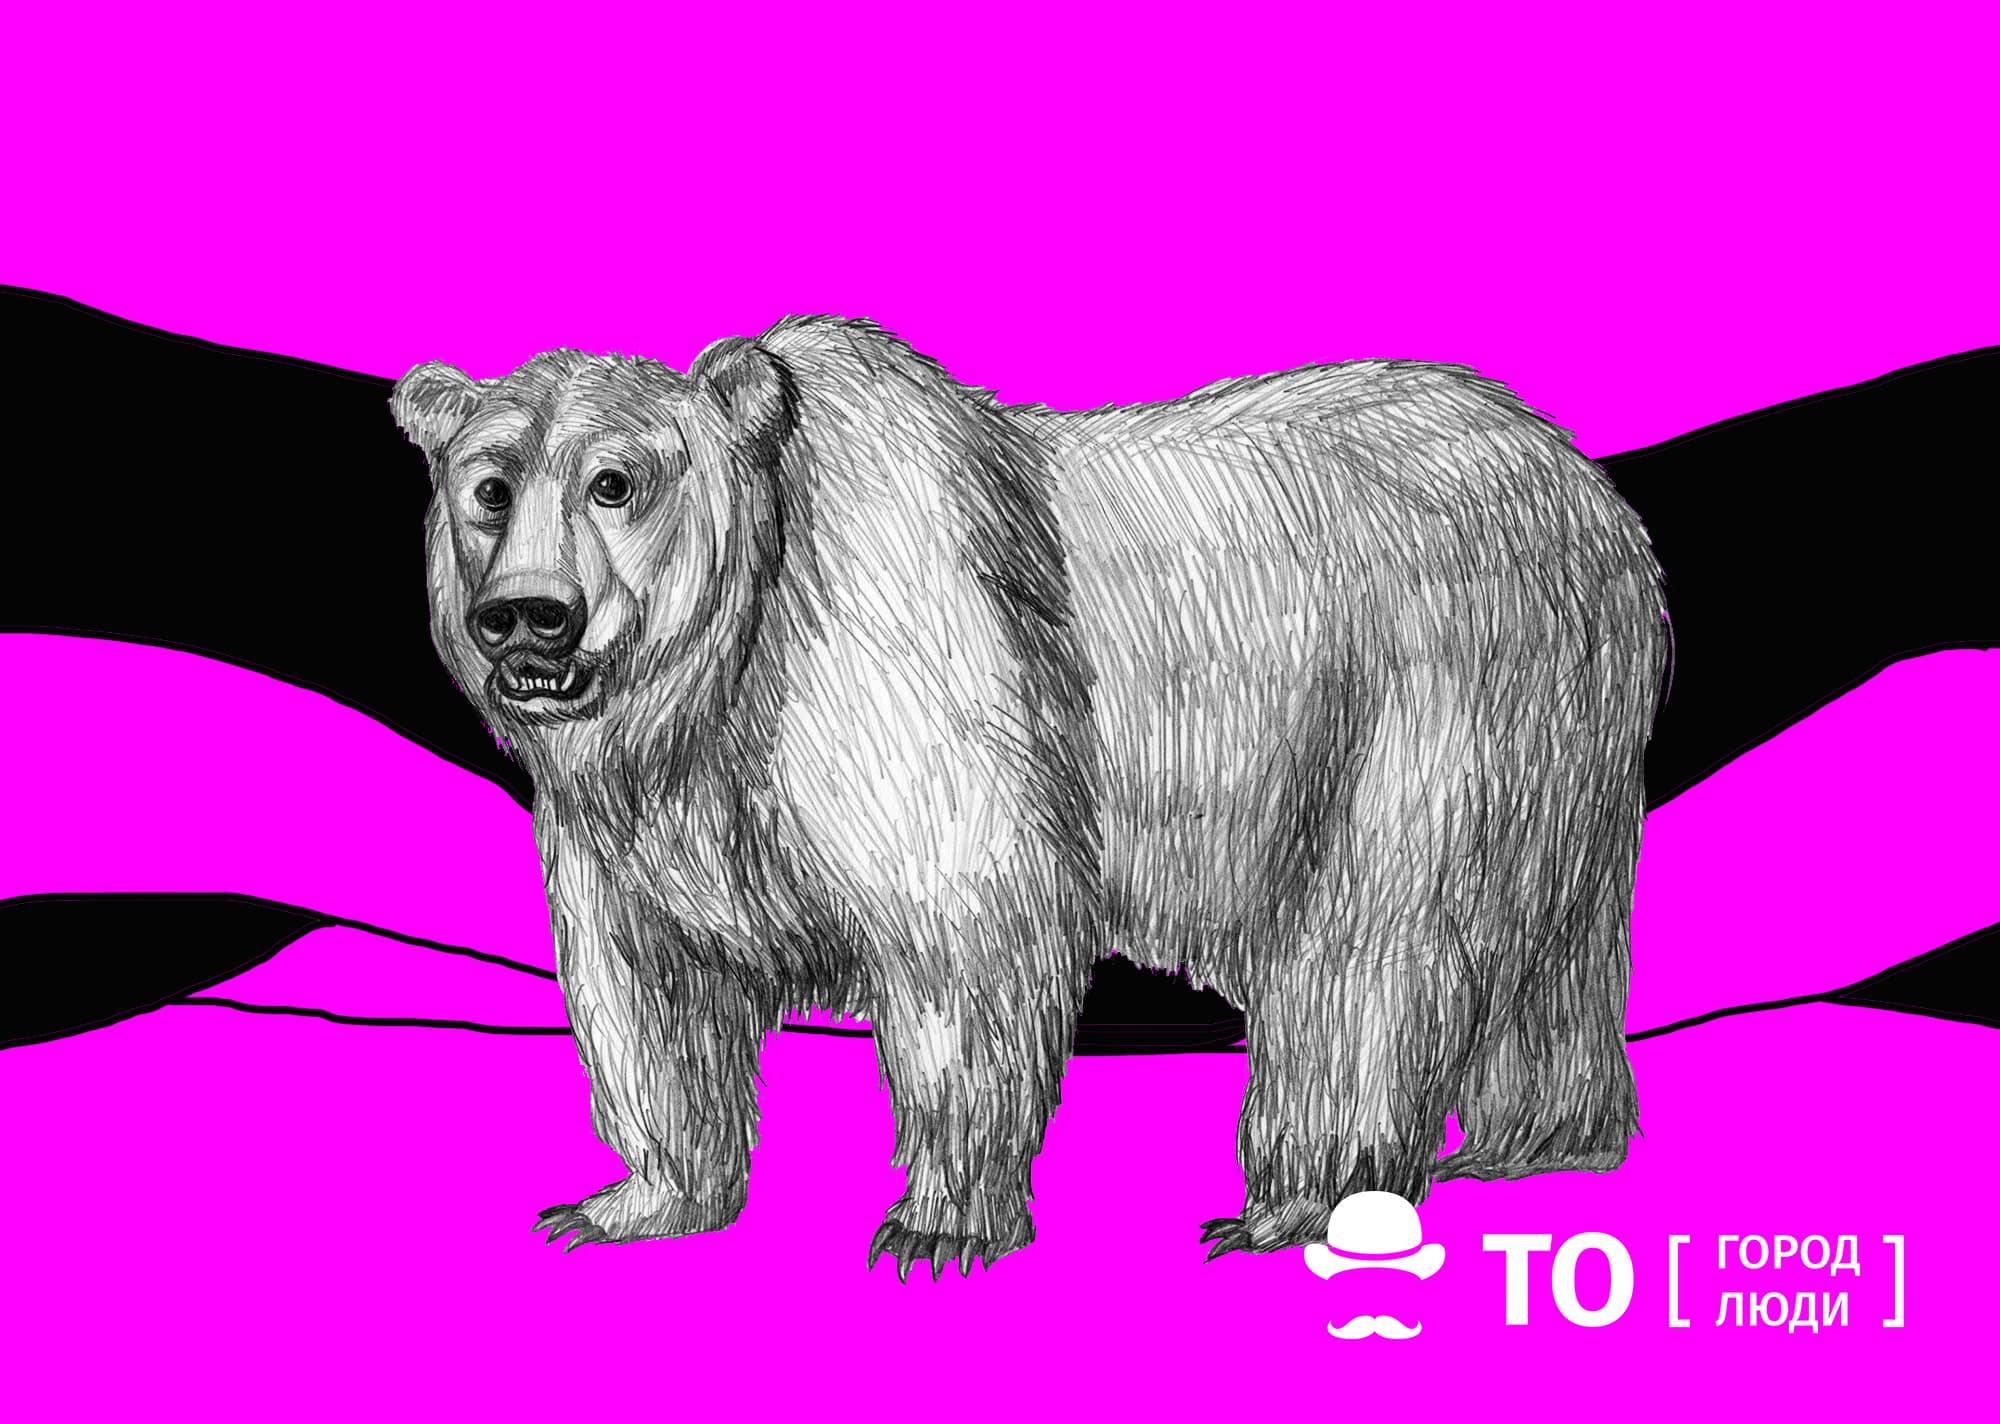 Безопасность, В мире животных, Природа, Томские новости, медведь нападени мусор интересные новости Томска баки Медведь повадился кормиться из мусорных контейнеров в селе под Томском